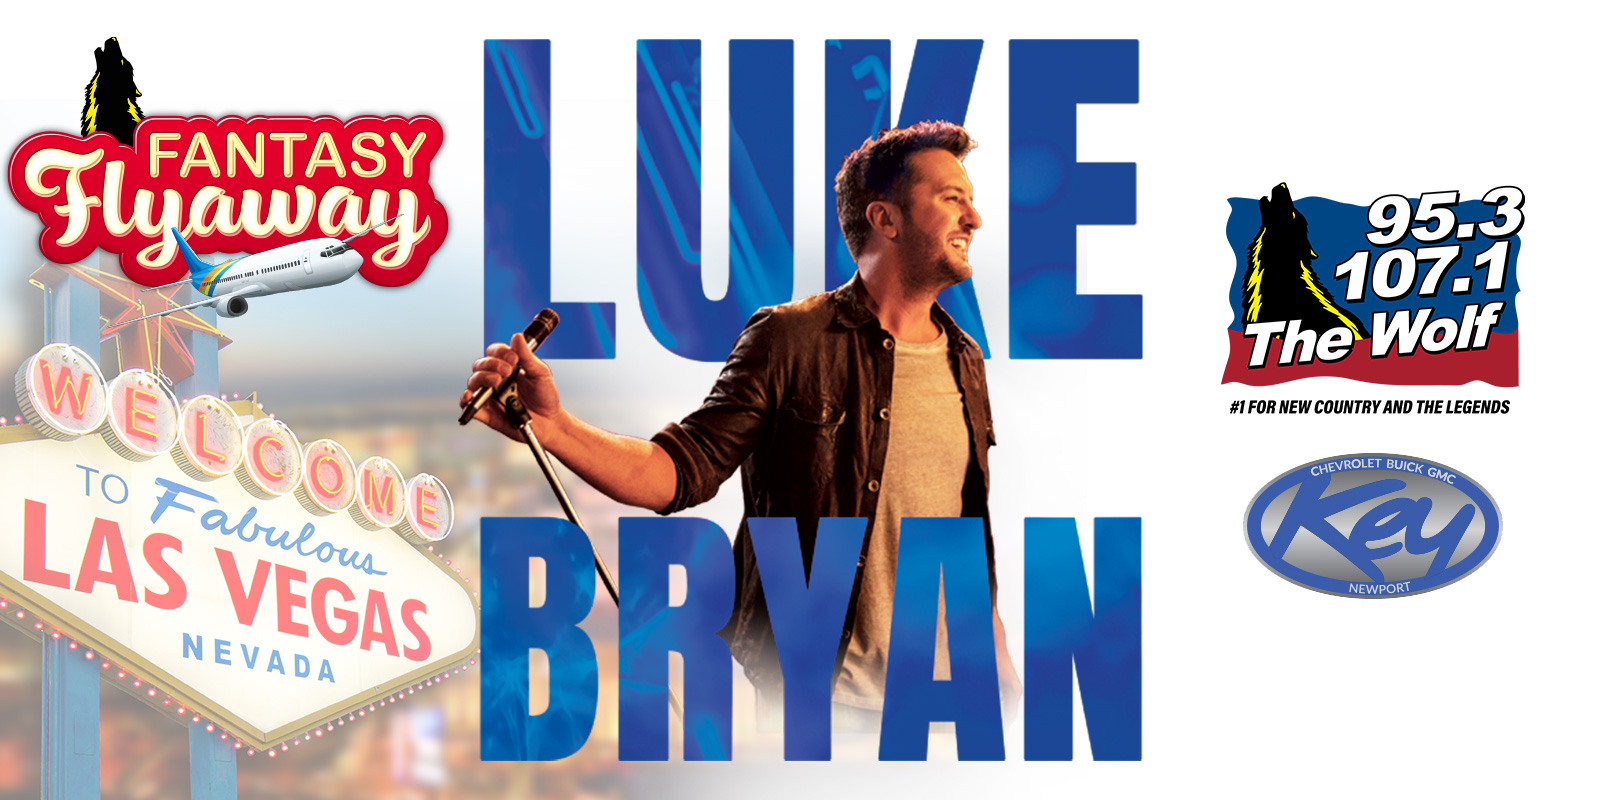 Fantasy Flyaway to See Luke Bryan in Las Vegas